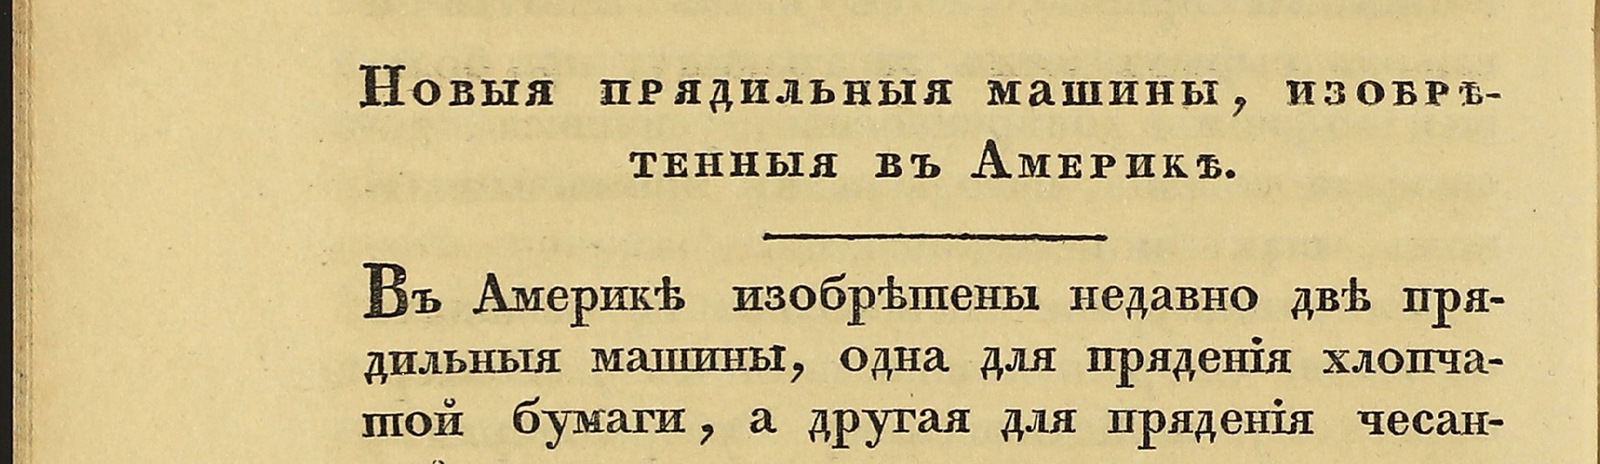 Фоновое изображение Журнал мануфактур и торговли. 1829 год. № 1